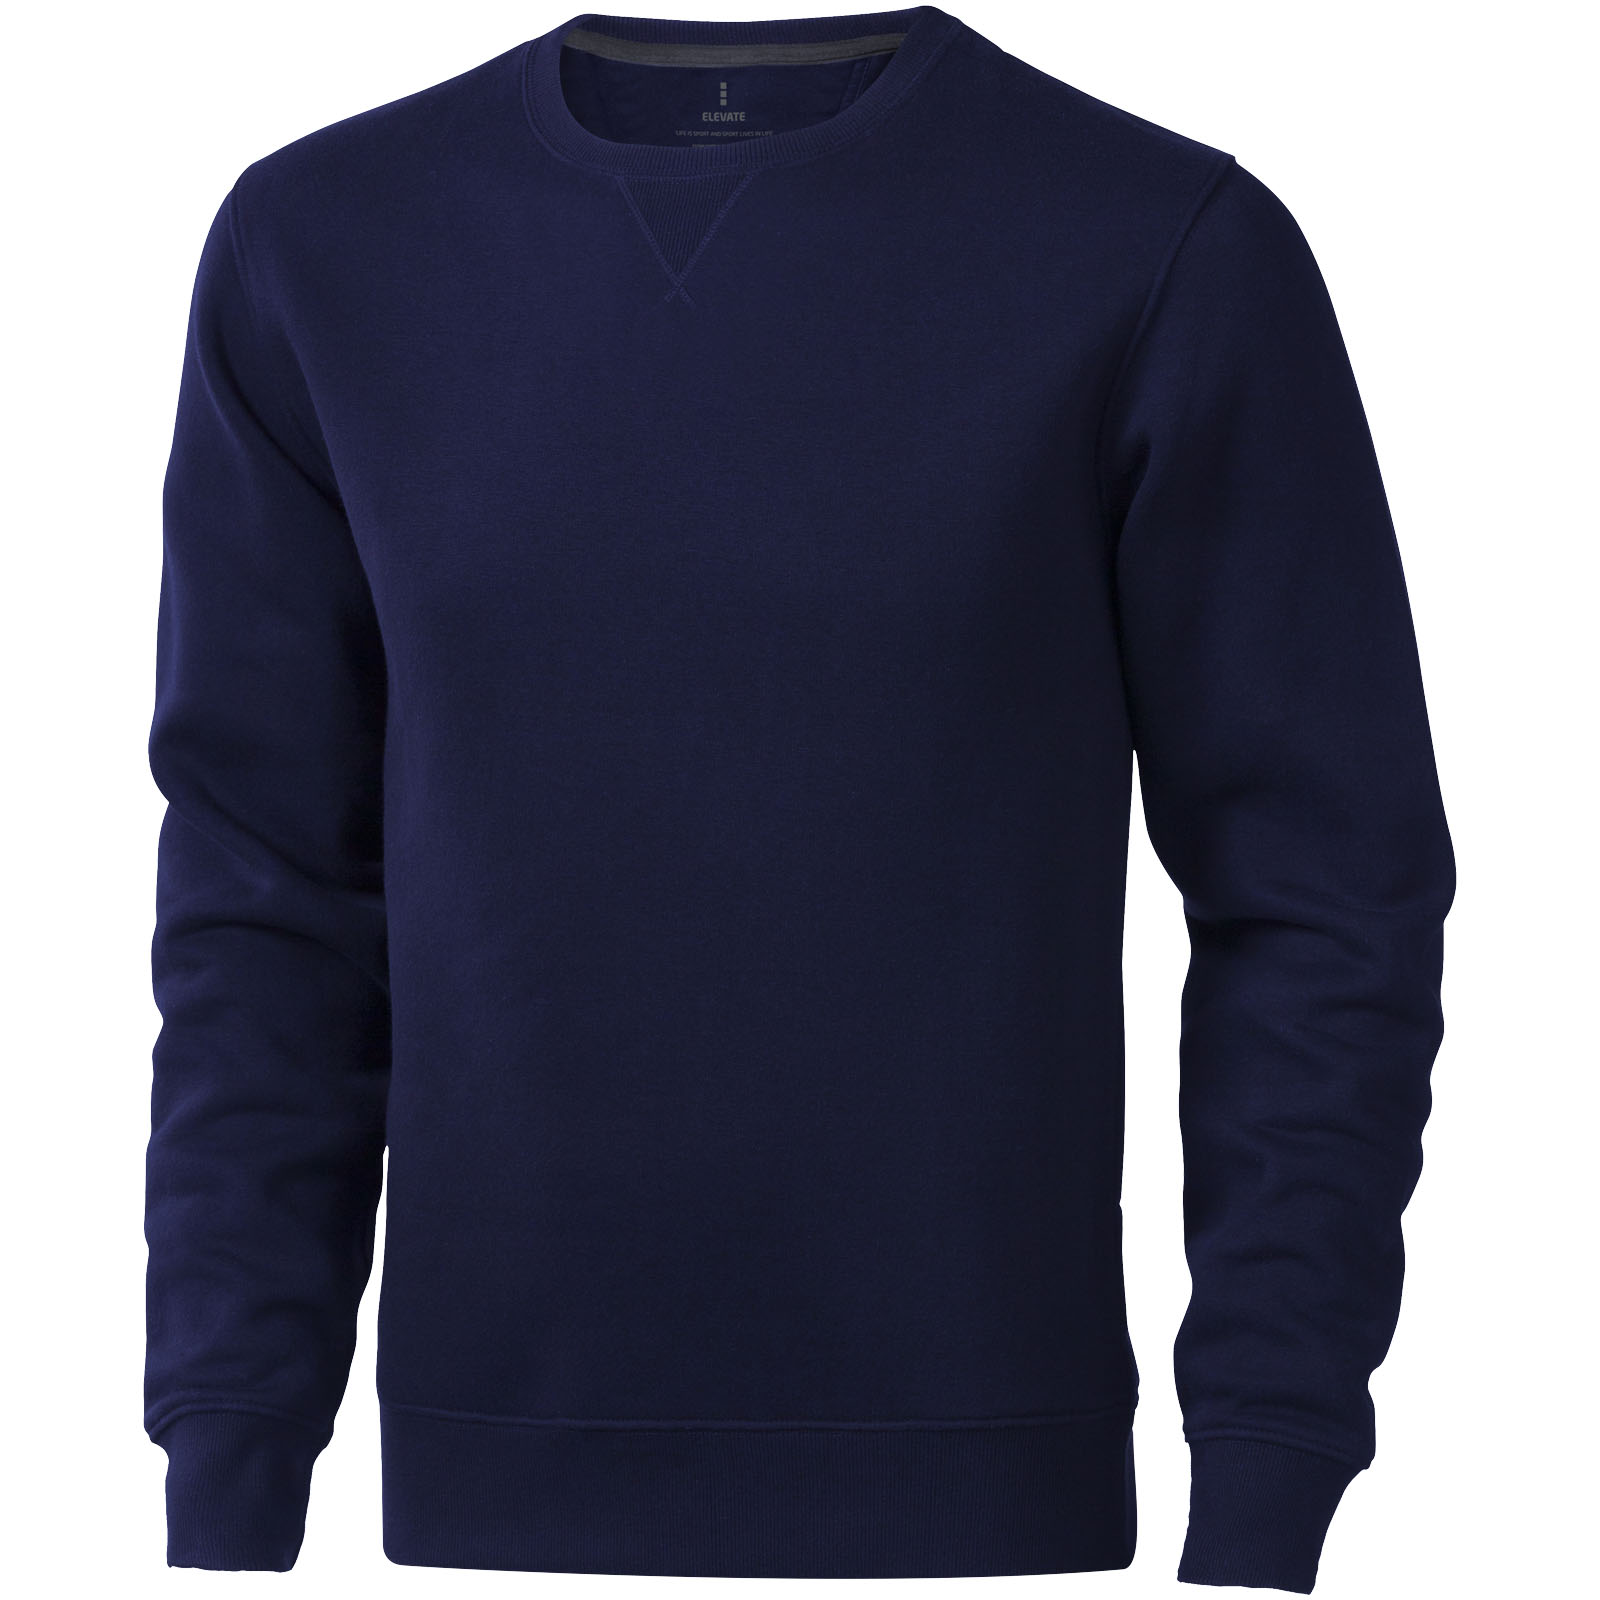 Clothing - Surrey unisex crewneck sweater